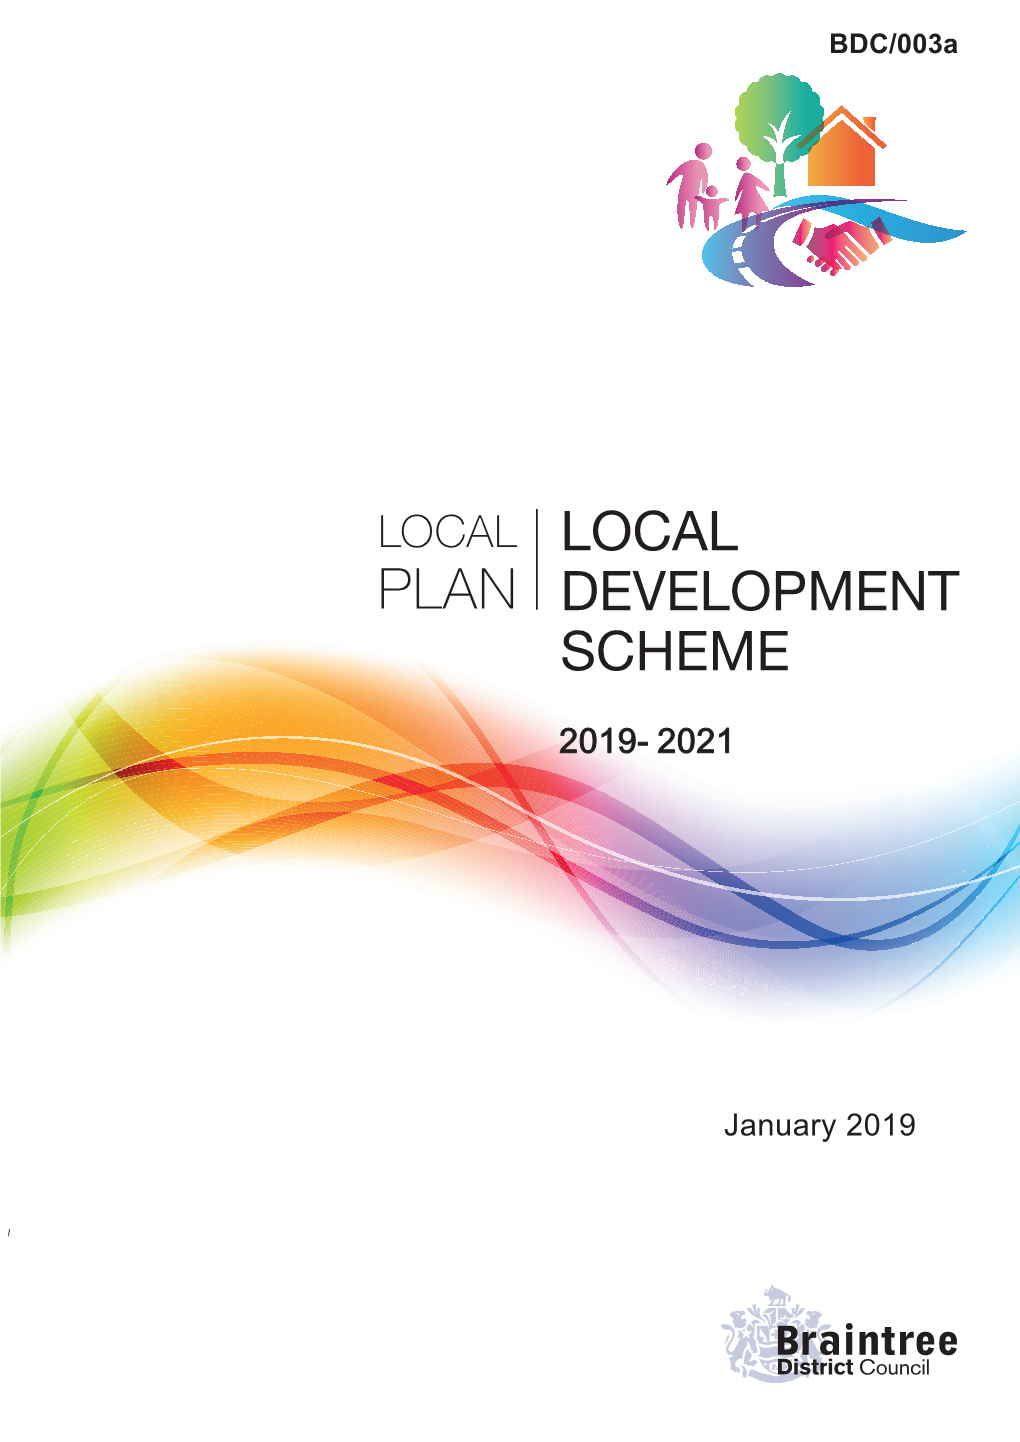 Local Development Scheme (LDS)